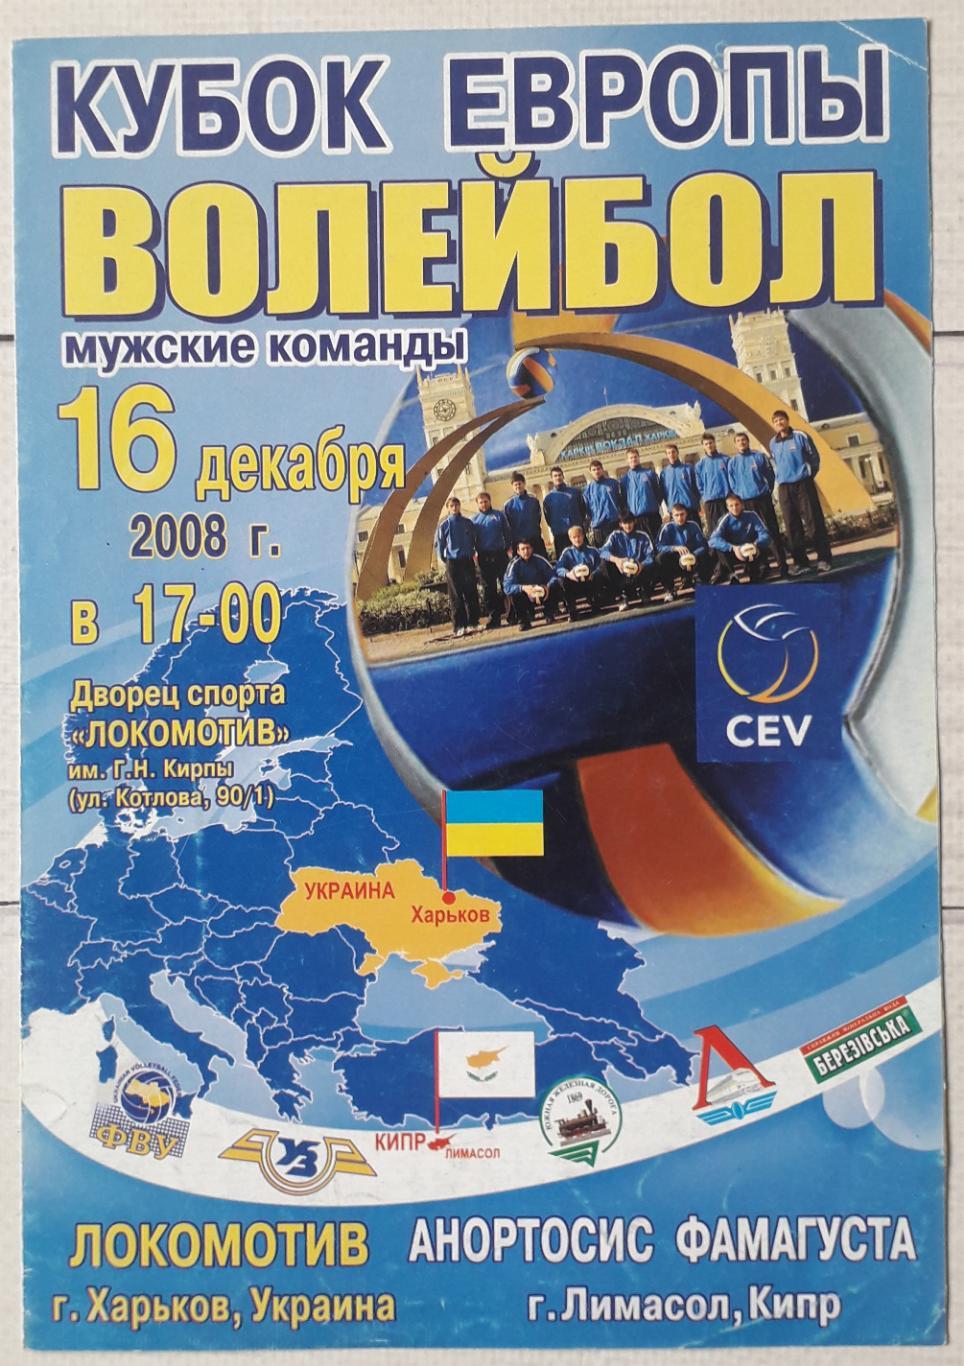 Локомотив Харьков – Анартосис Фамагуста Кипр 16.12.2008. Волейбол.